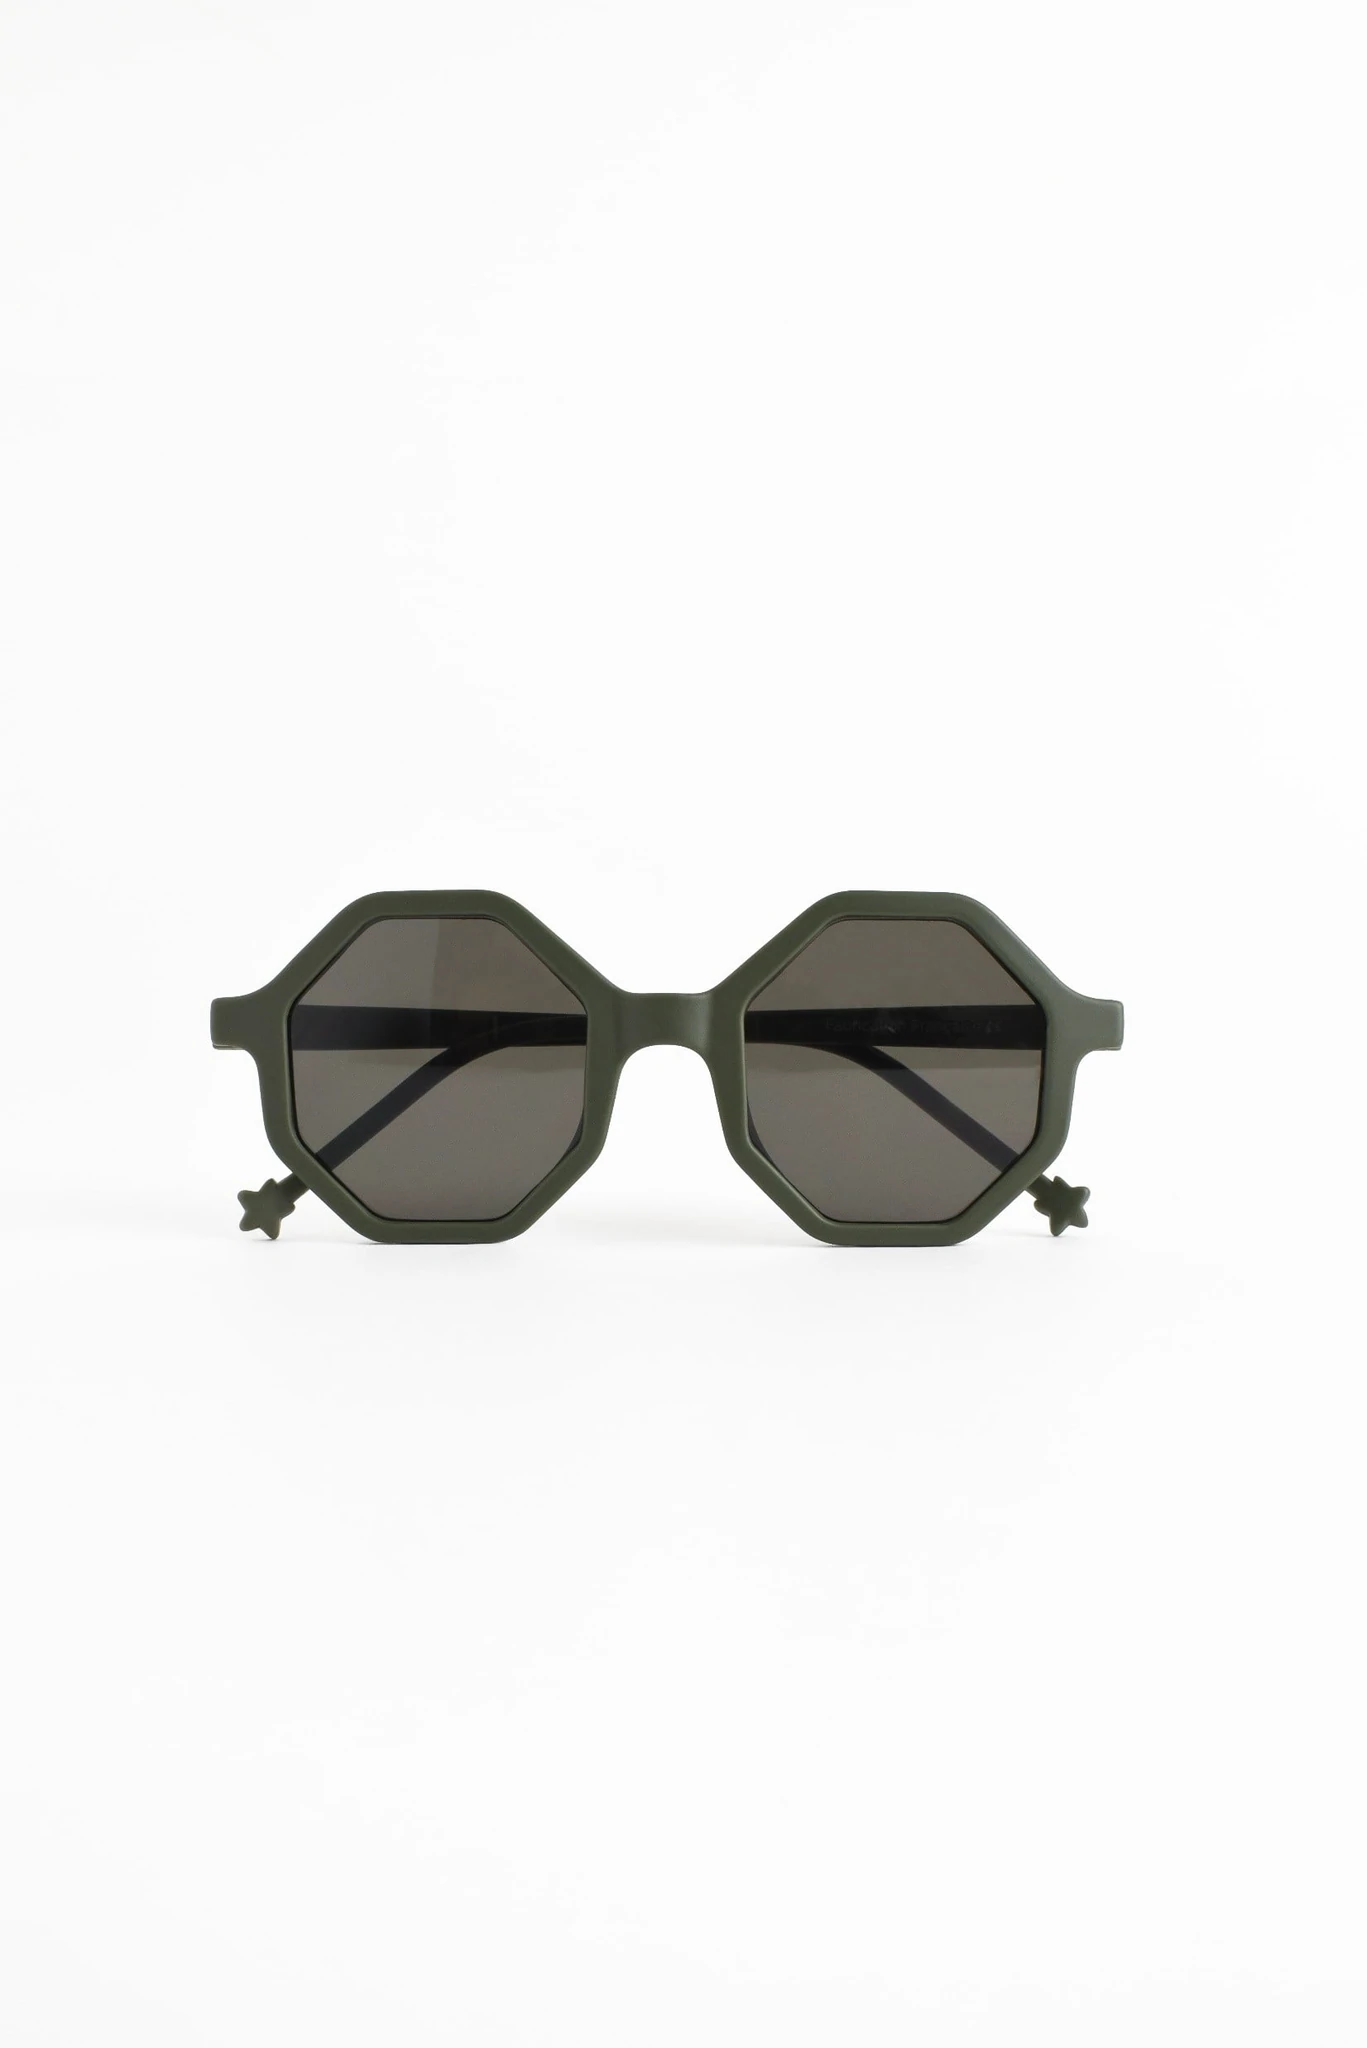 Okulary przeciwsłoneczne dla dzieci Khaki Green